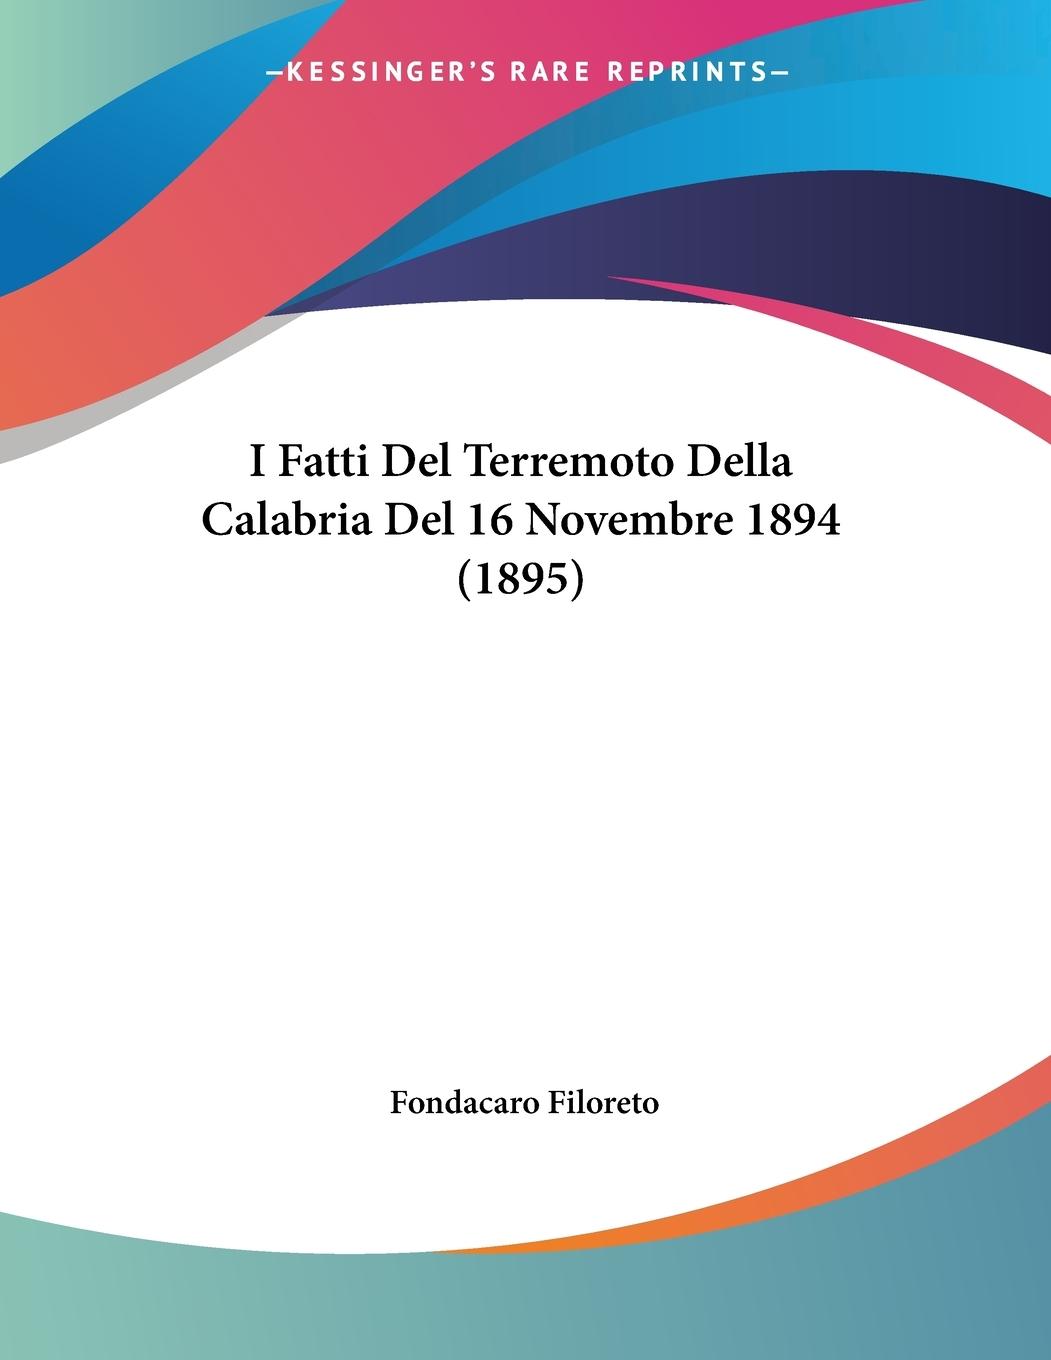 I Fatti Del Terremoto Della Calabria Del 16 Novembre 1894 (1895) - Filoreto, Fondacaro